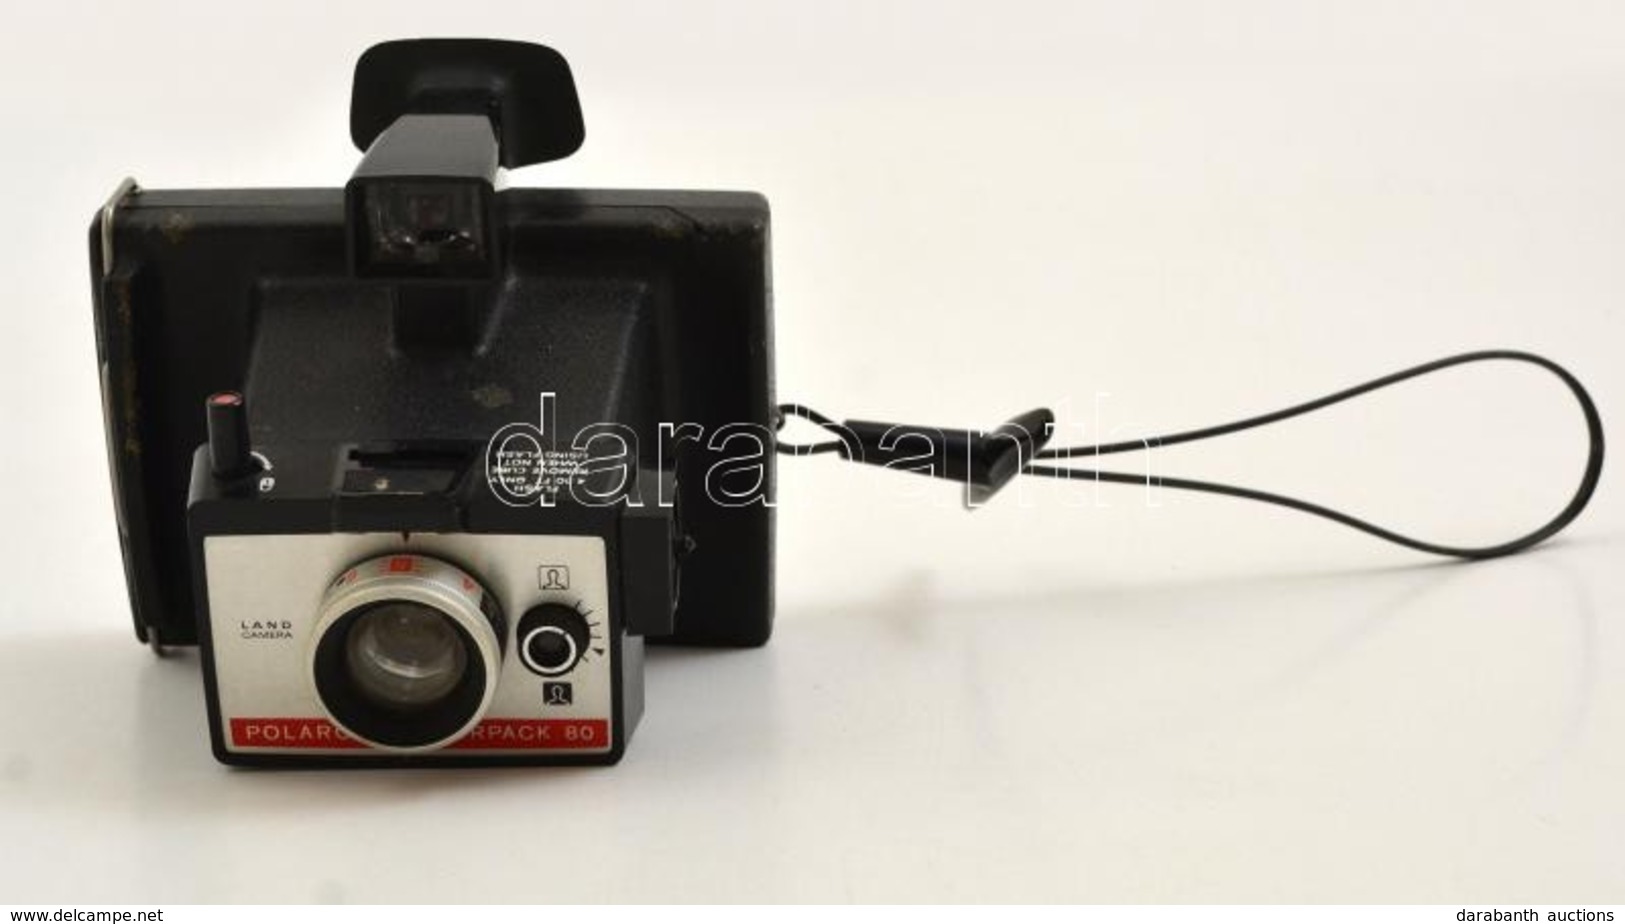 Cca 1975 Polaroid Colorpack 80 Fényképezőgép, Jó állapotban / Polaroid Instant Film Camera, In Good Condition - Fototoestellen